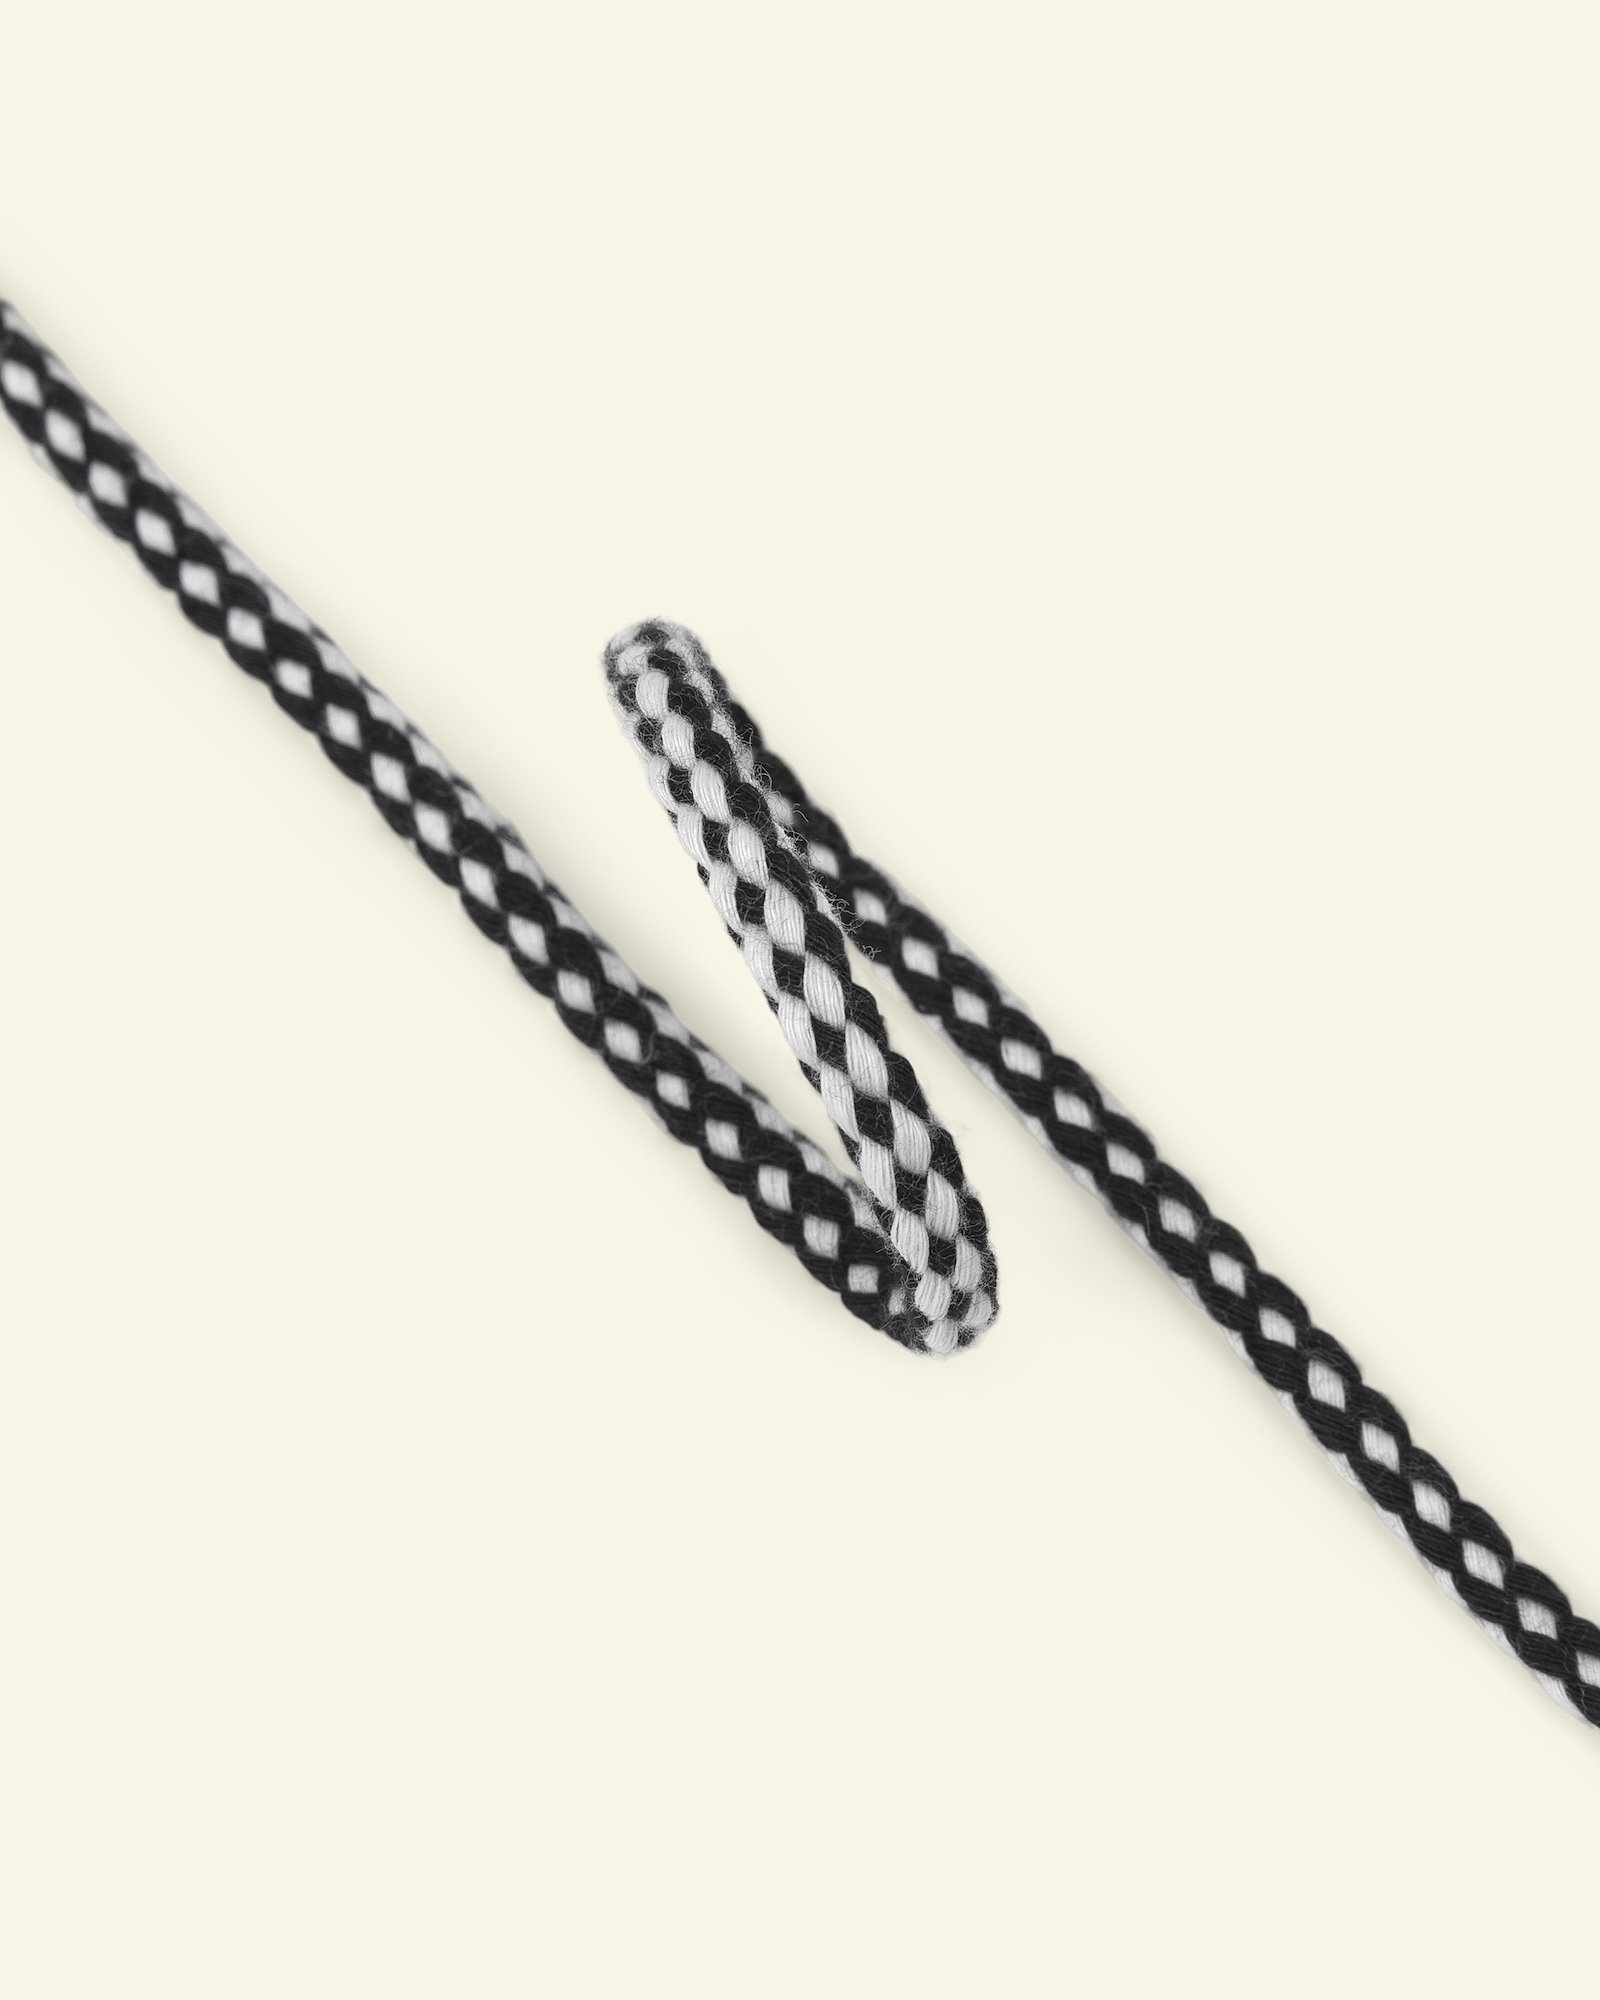 Anorak cord 4,5mm black/white 5m 75205_pack